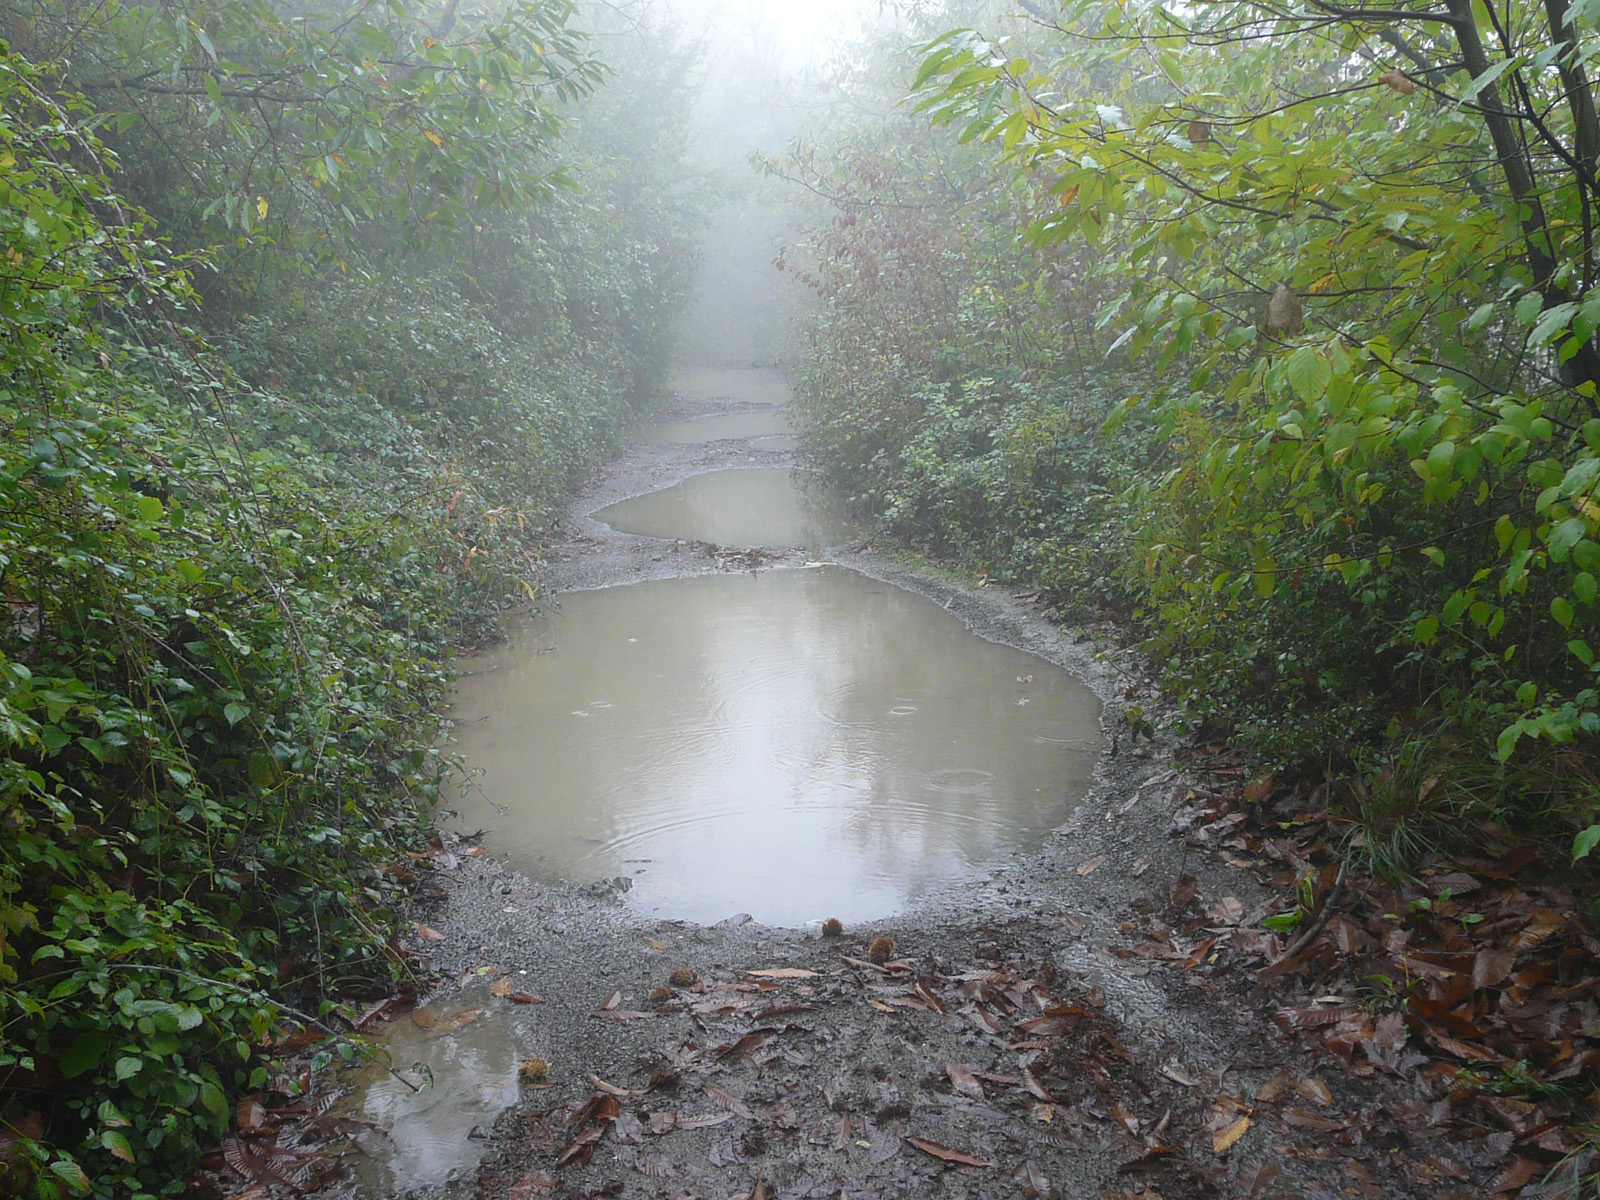  Regen begleitete den Wanderer öfters auf seinem Weg und sorgte für erschwerte Bedingungen auf der Reise 